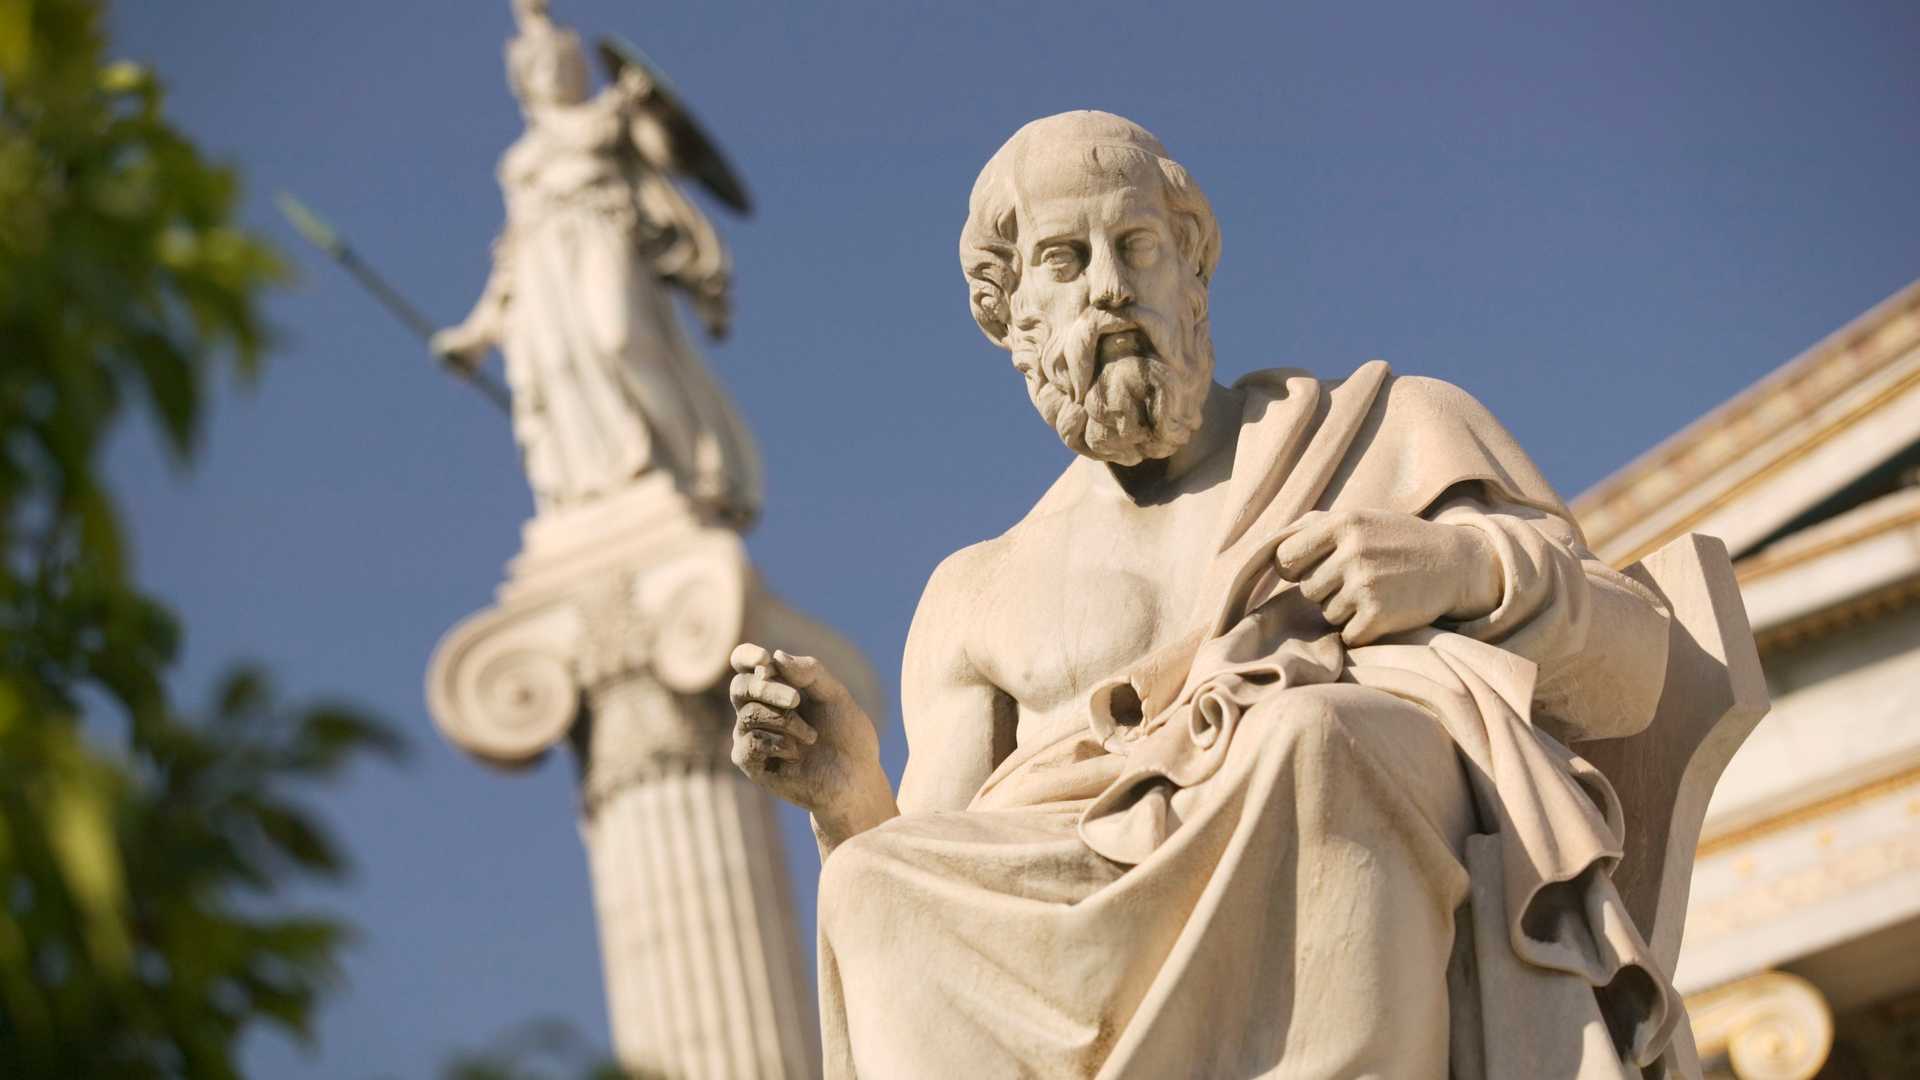 Plato và Kitô giáo: Sự hoàn thiện, thông thiên học và... kem dưỡng da tay hữu cơ